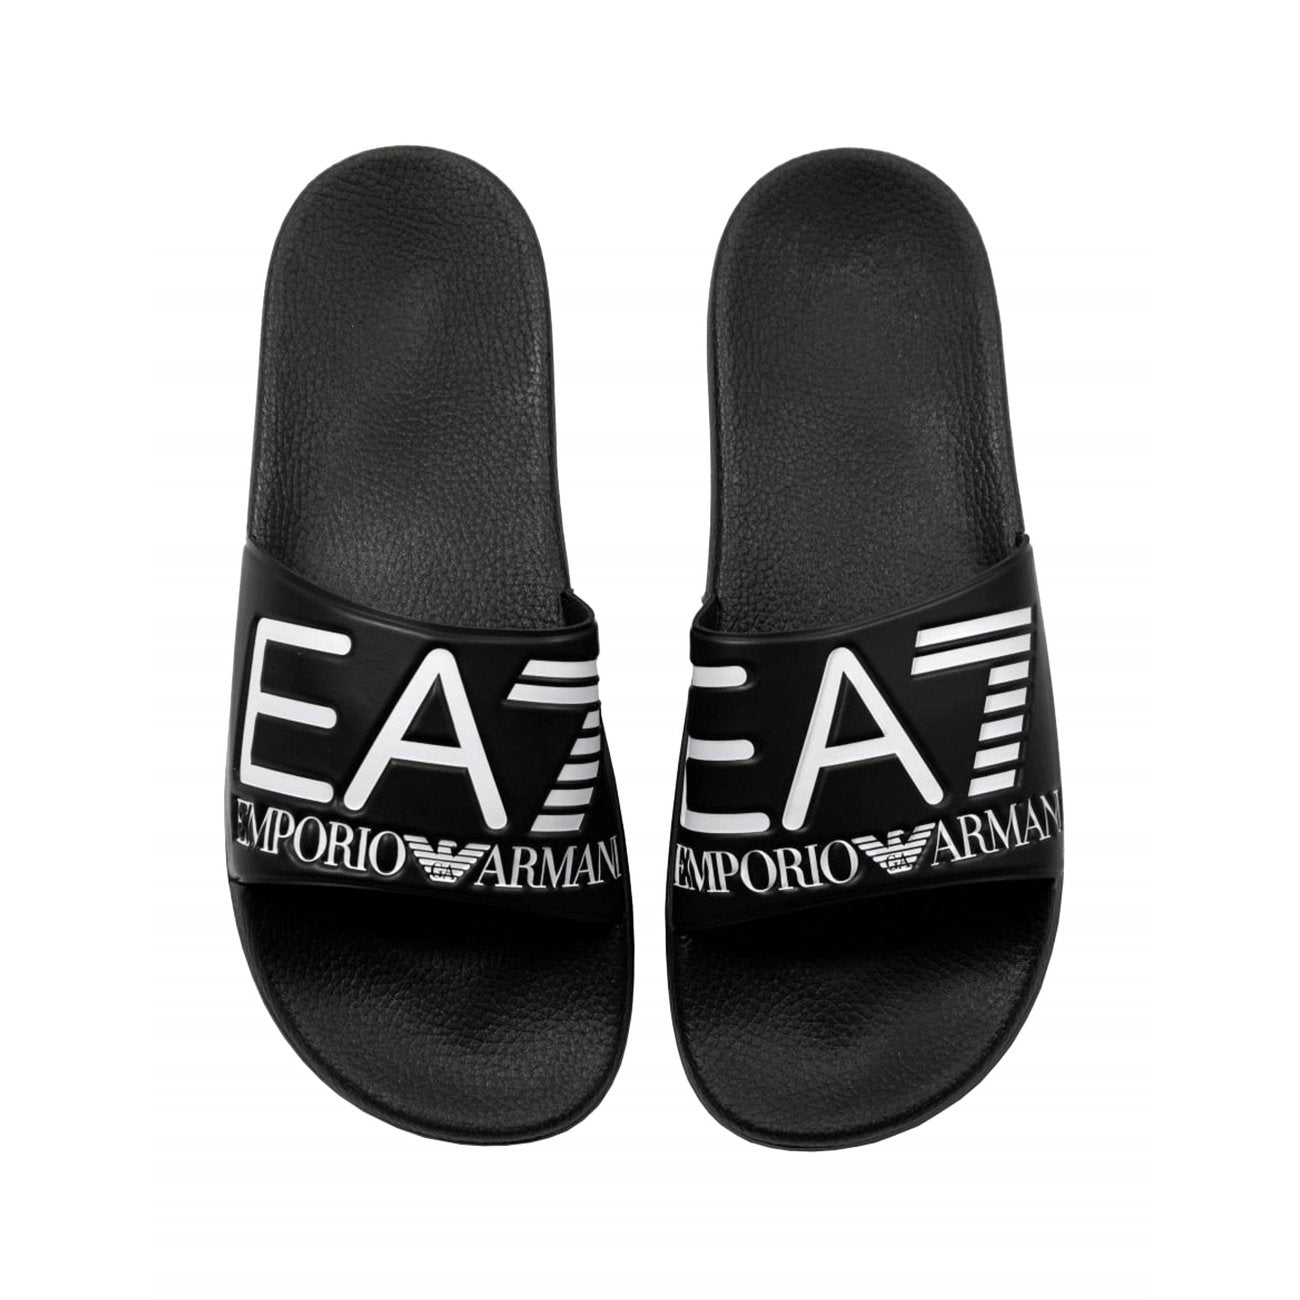 EA7 Emporio Armani Men's Sandals Sliders Black/White - Top